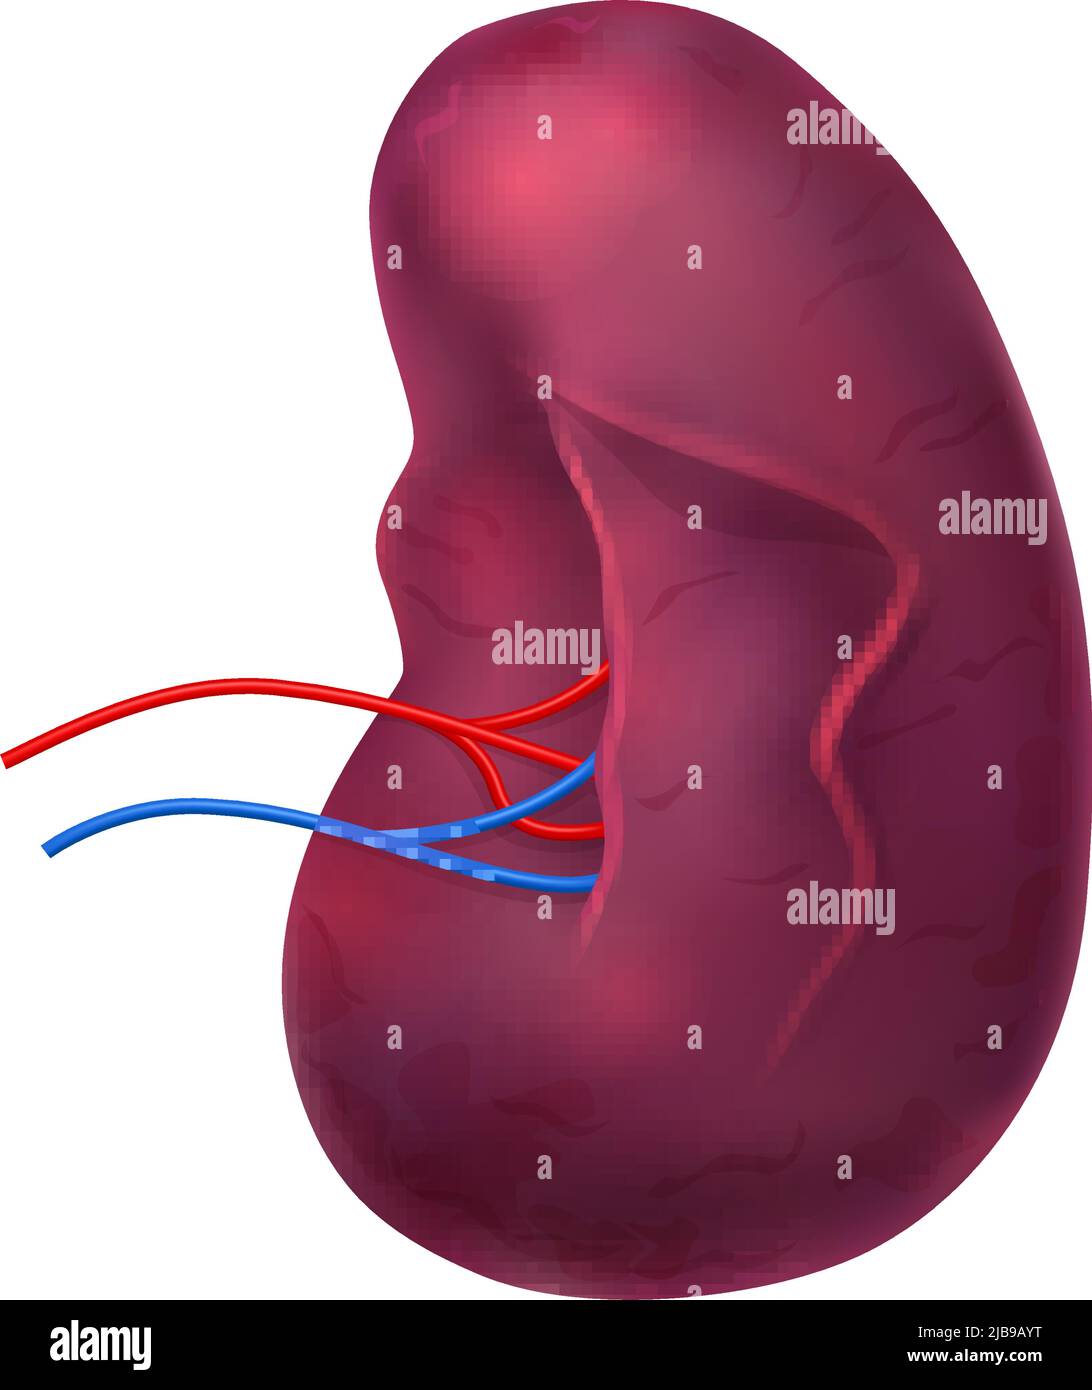 Realistische Zusammensetzung der Anatomie der menschlichen inneren Organe mit isolierter Abbildung des Milzvektors Stock Vektor